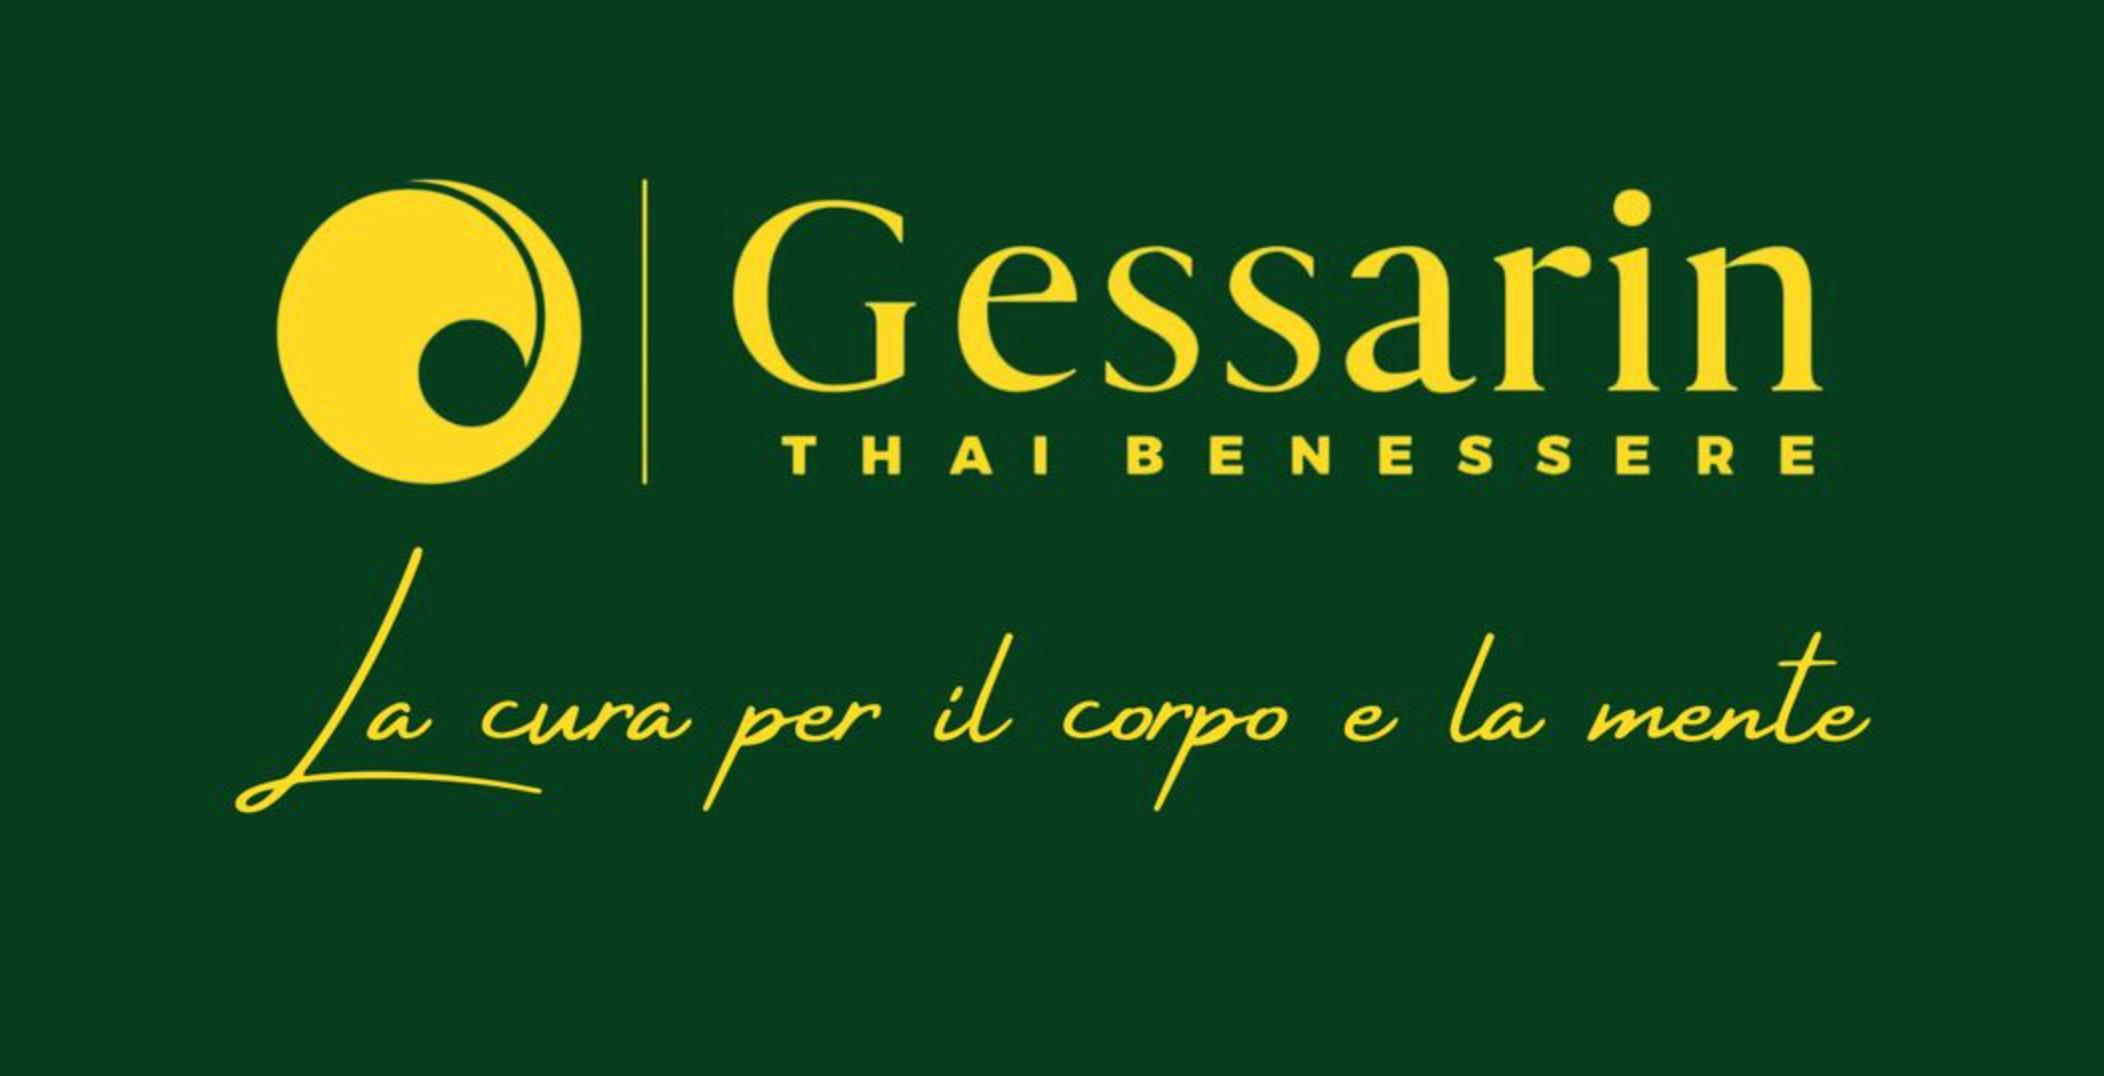 Bilder Gessarin - Thai Benessere